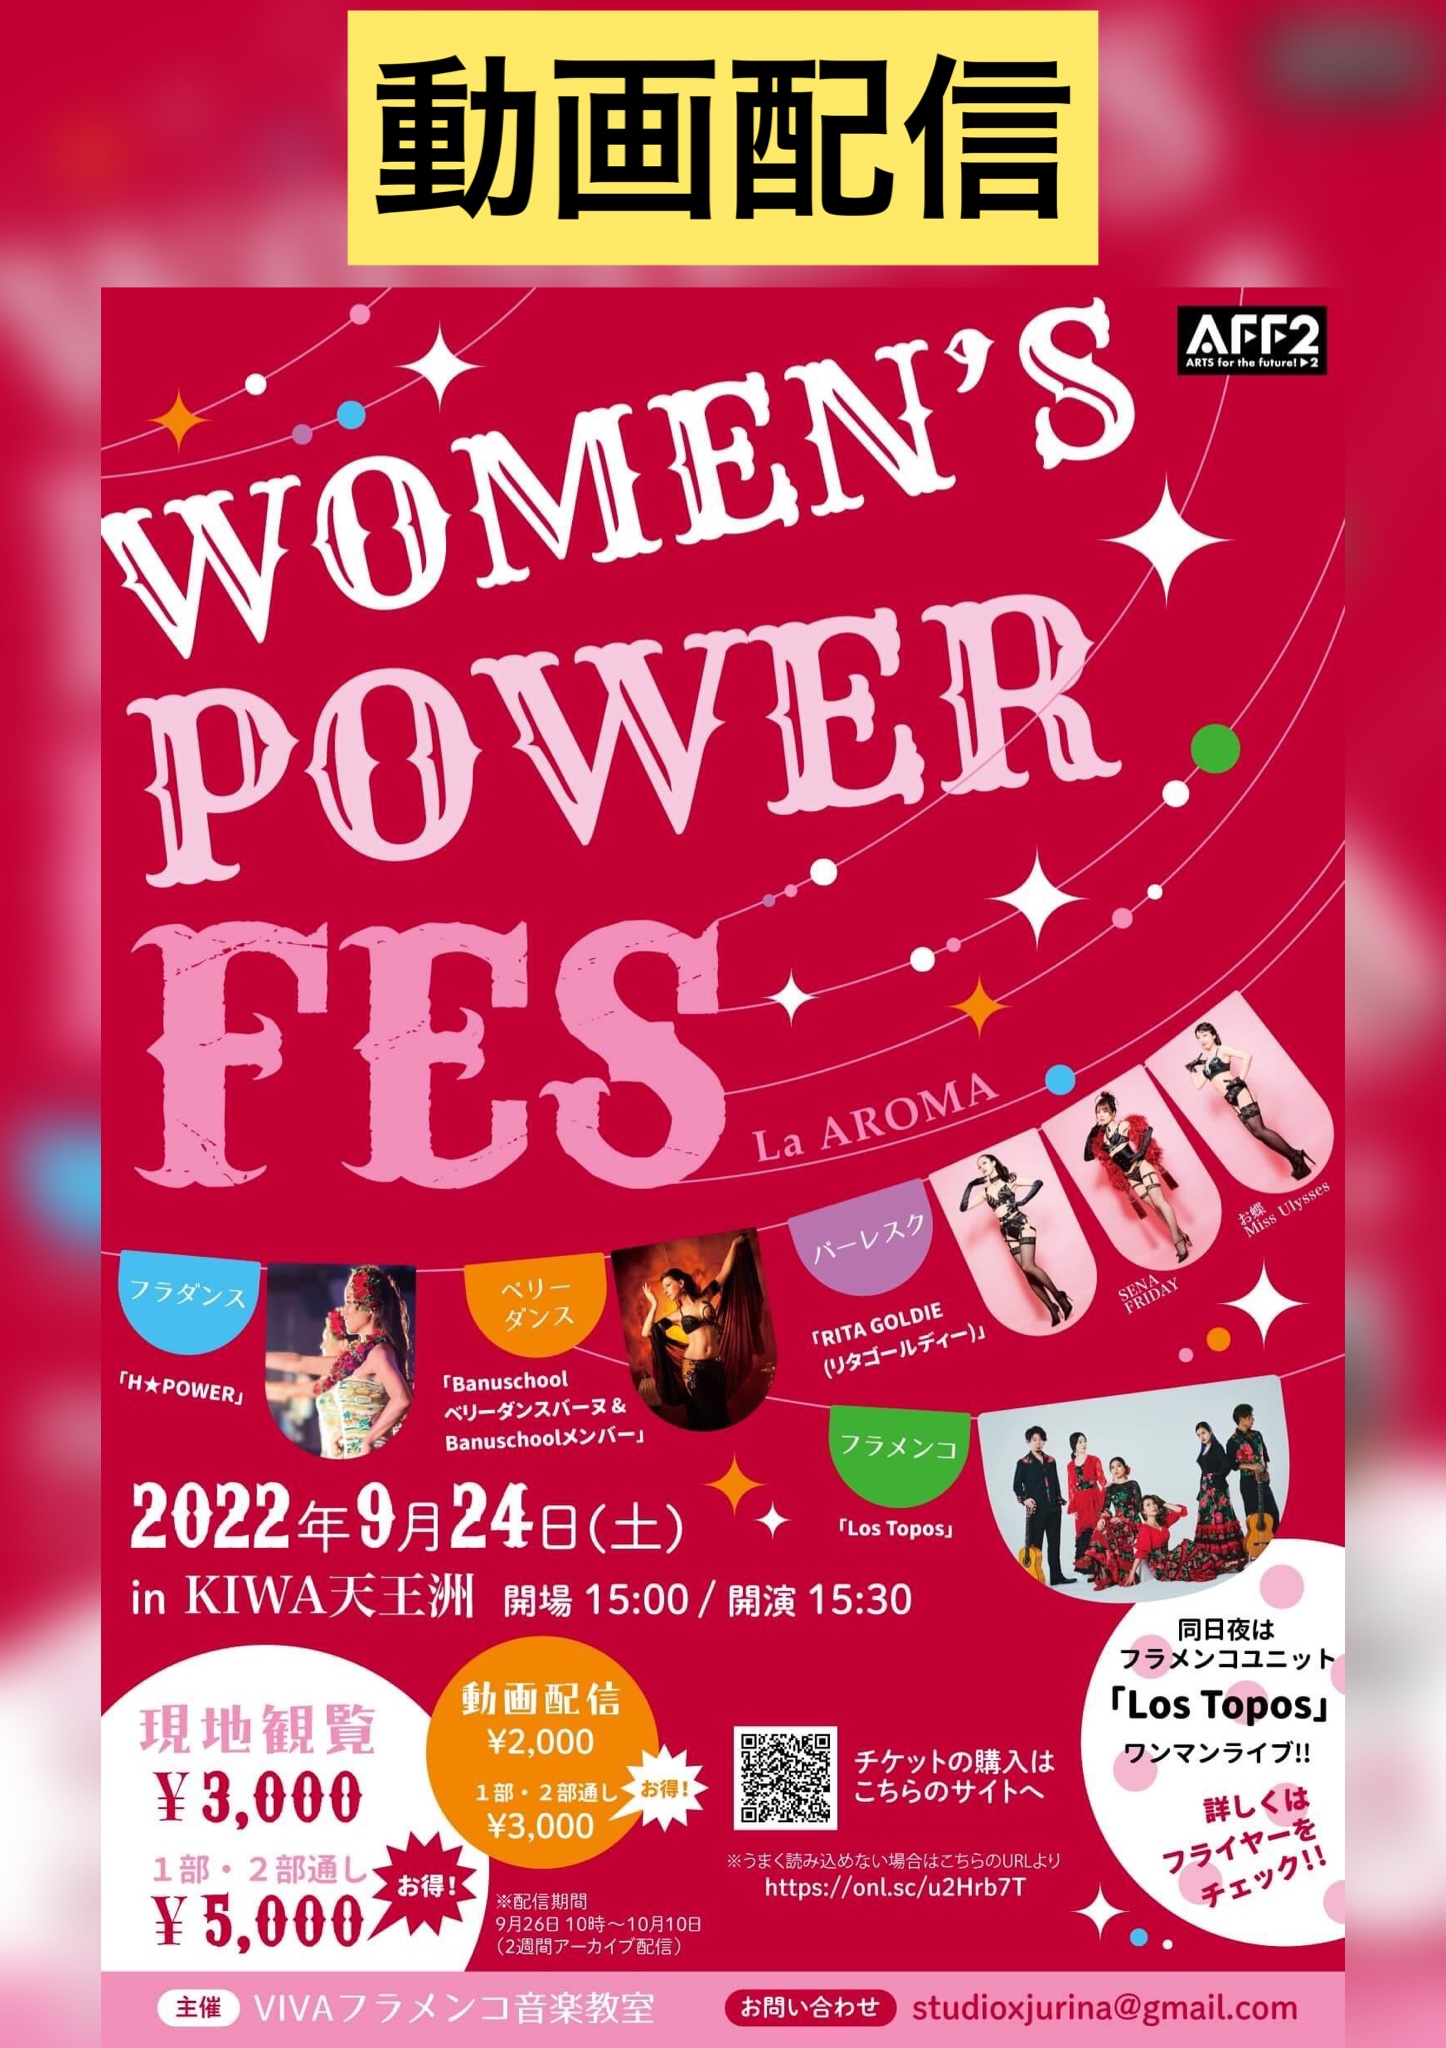 【動画配信/1部】WOMEN'S POWER FES